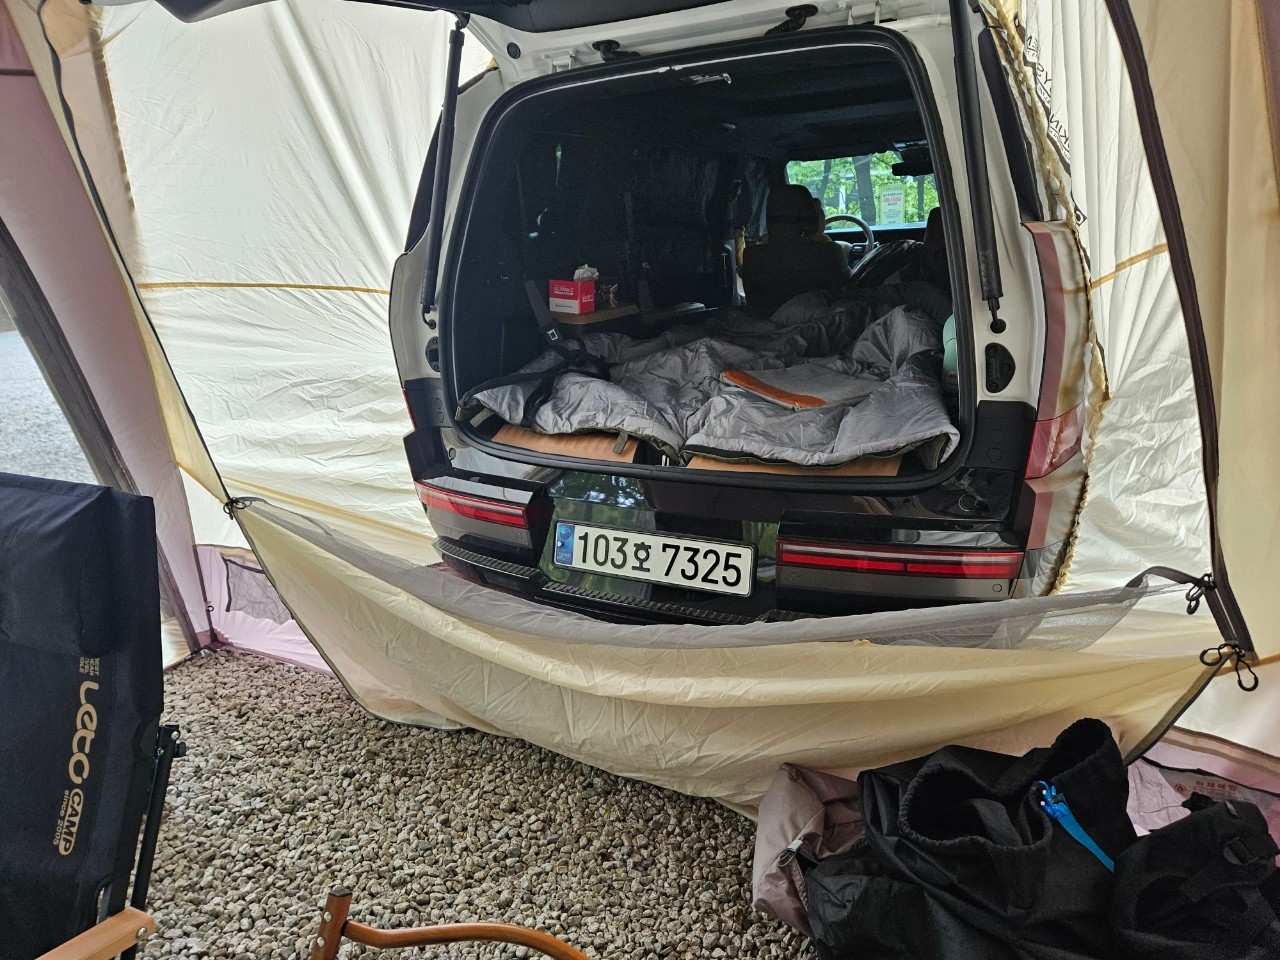 차량, 텐트, 육상 차량, 야외이(가) 표시된 사진

자동 생성된 설명